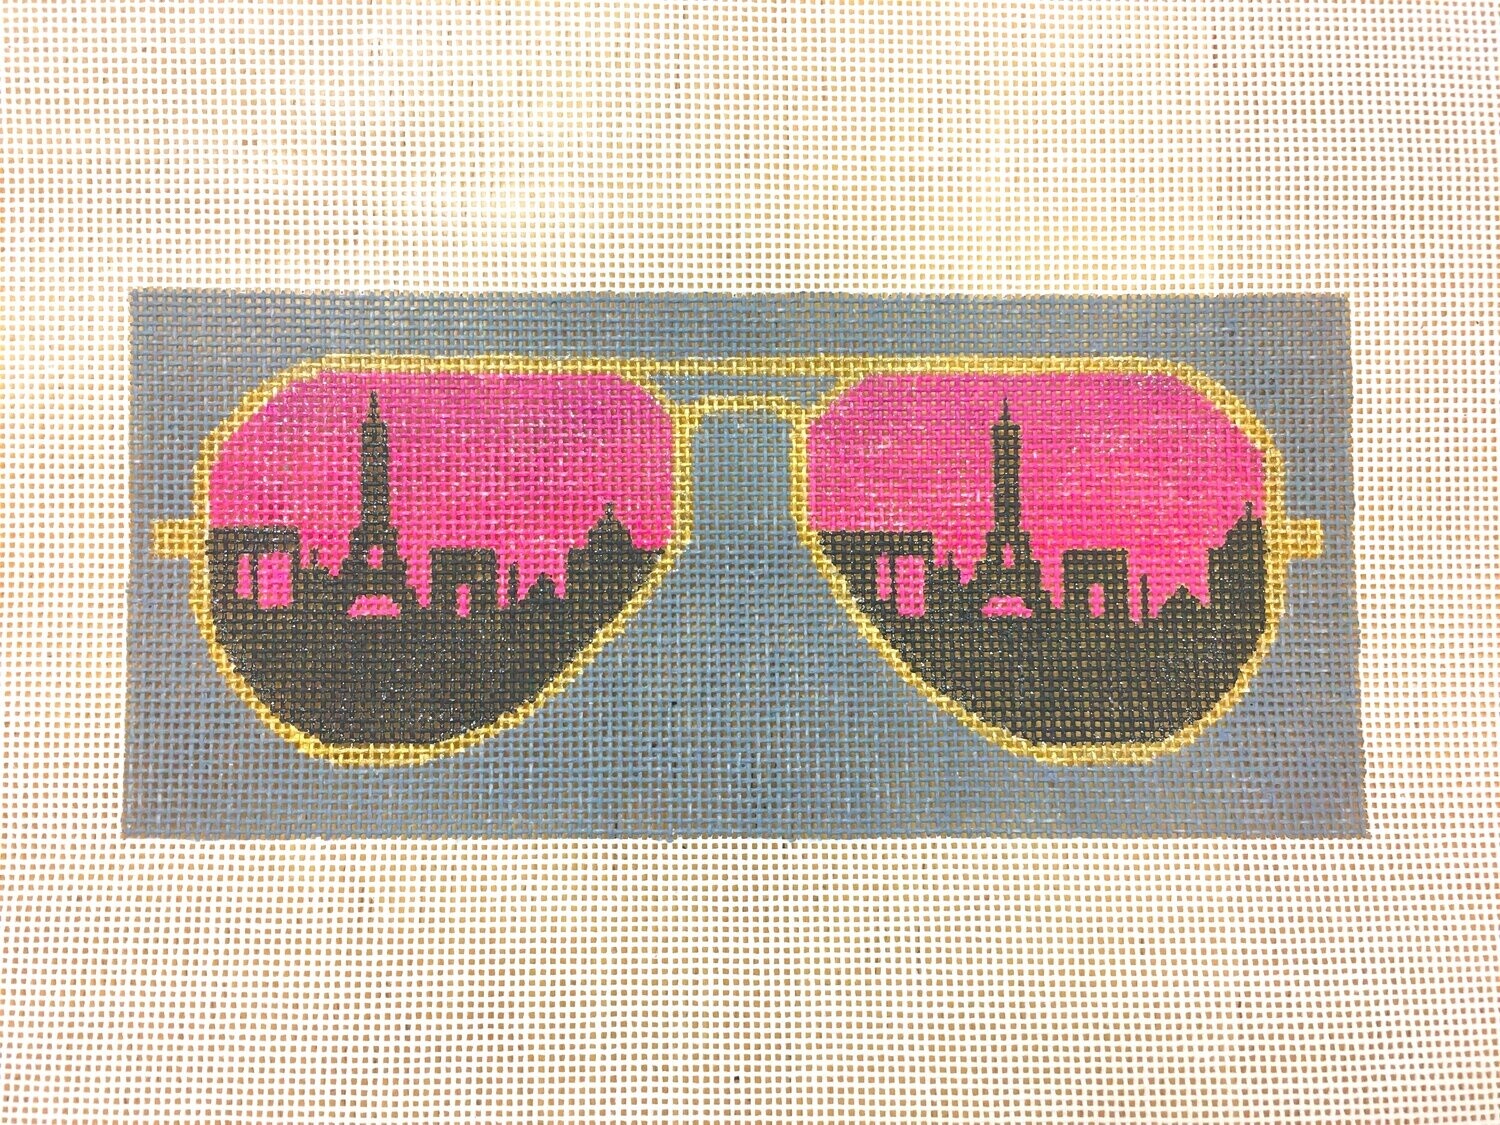 Sunglasses - Paris